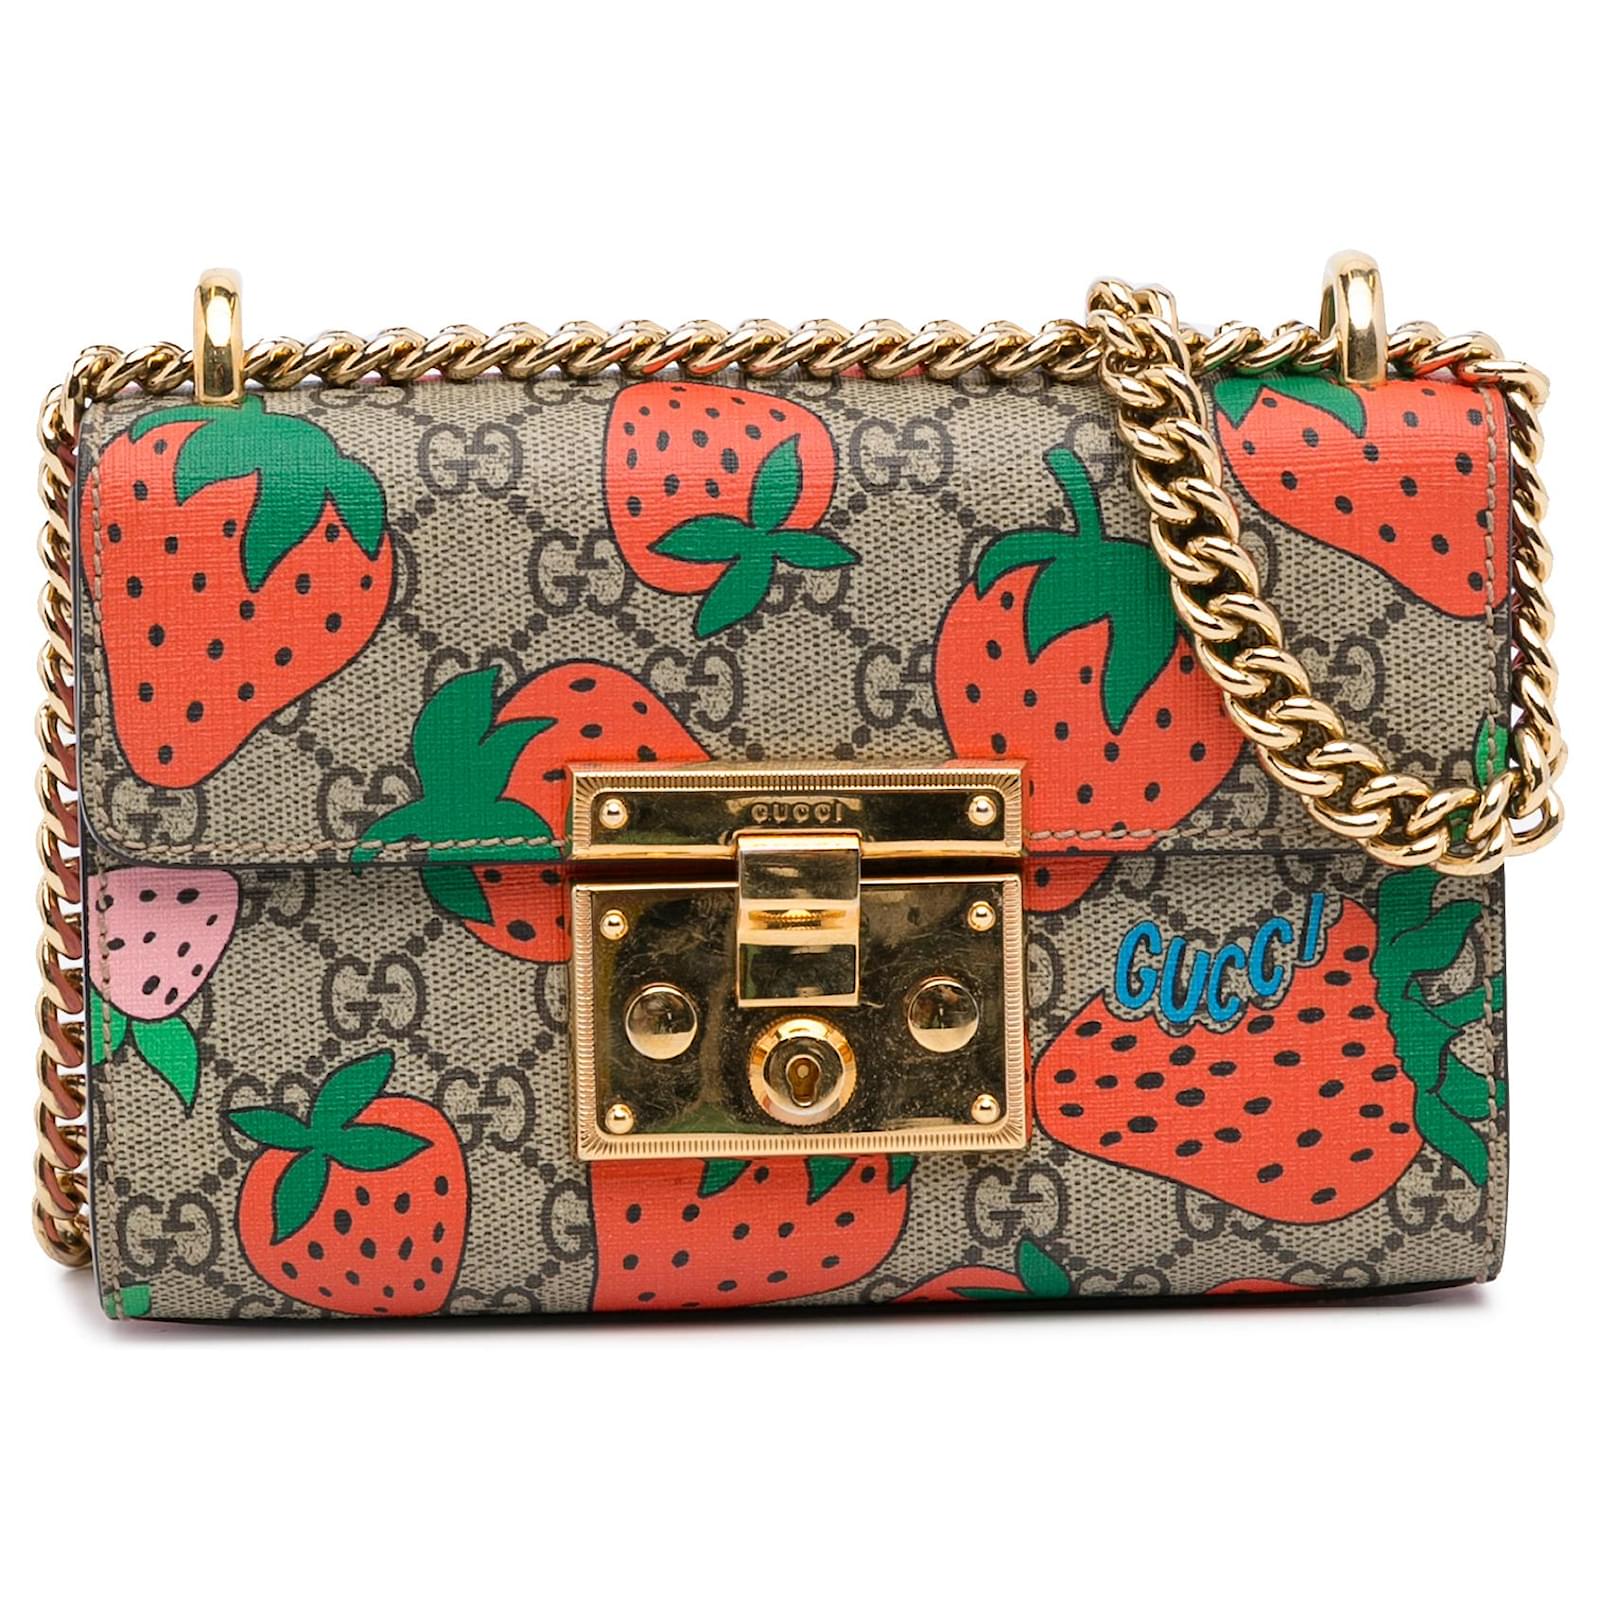 Gucci Padlock GG Strawberry Small Shoulder Bag